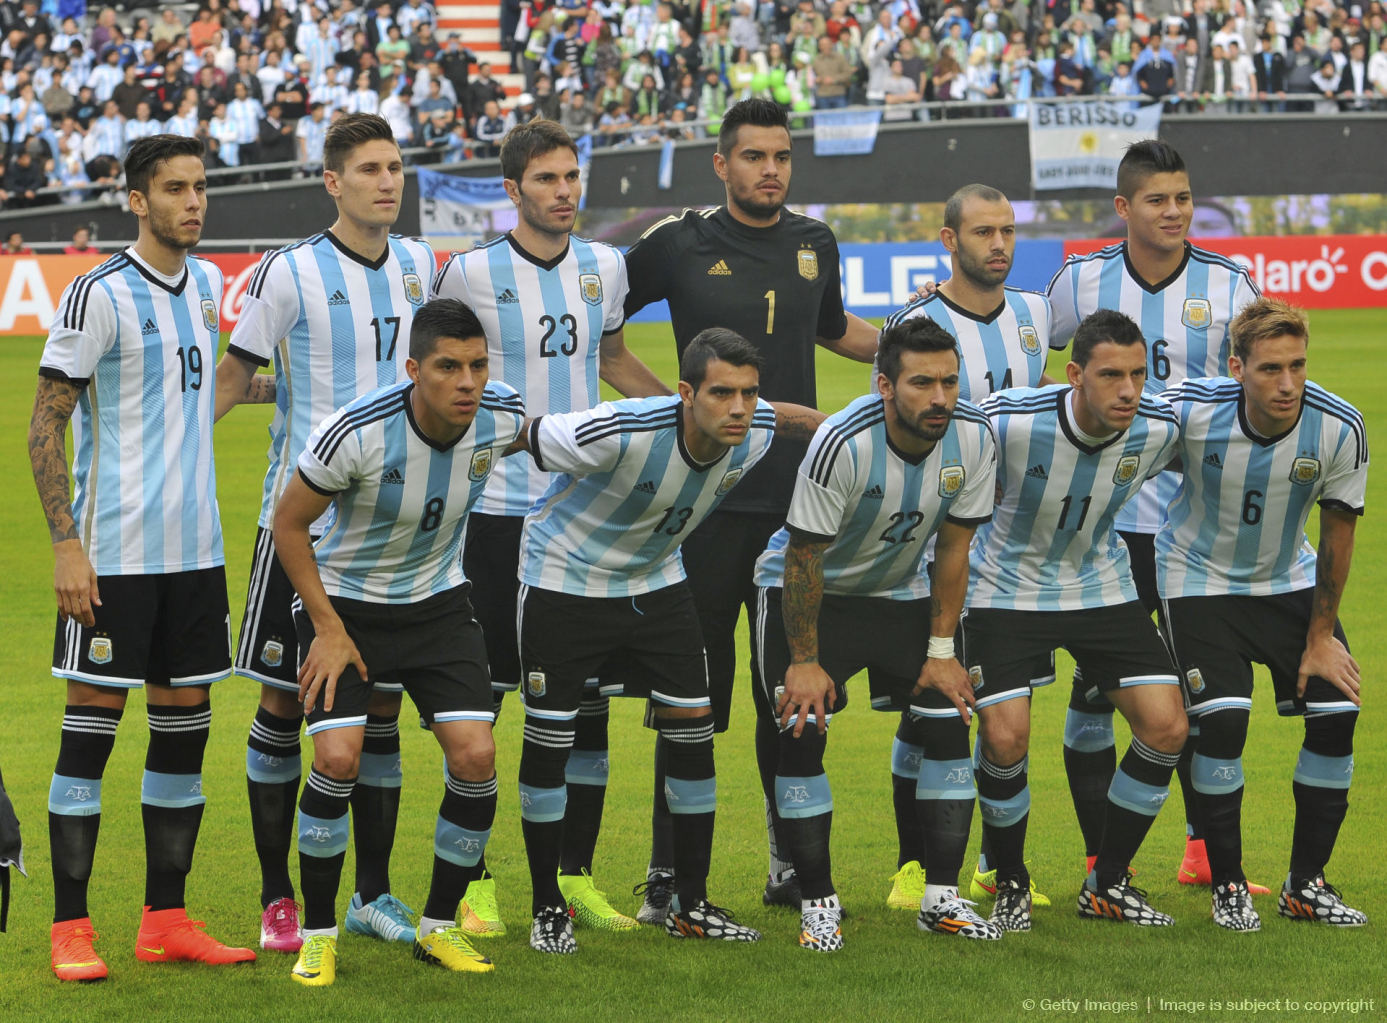 عکس های رسمی بازیکنان حاضر در جام جهانی: تیم ملی آرژانتین